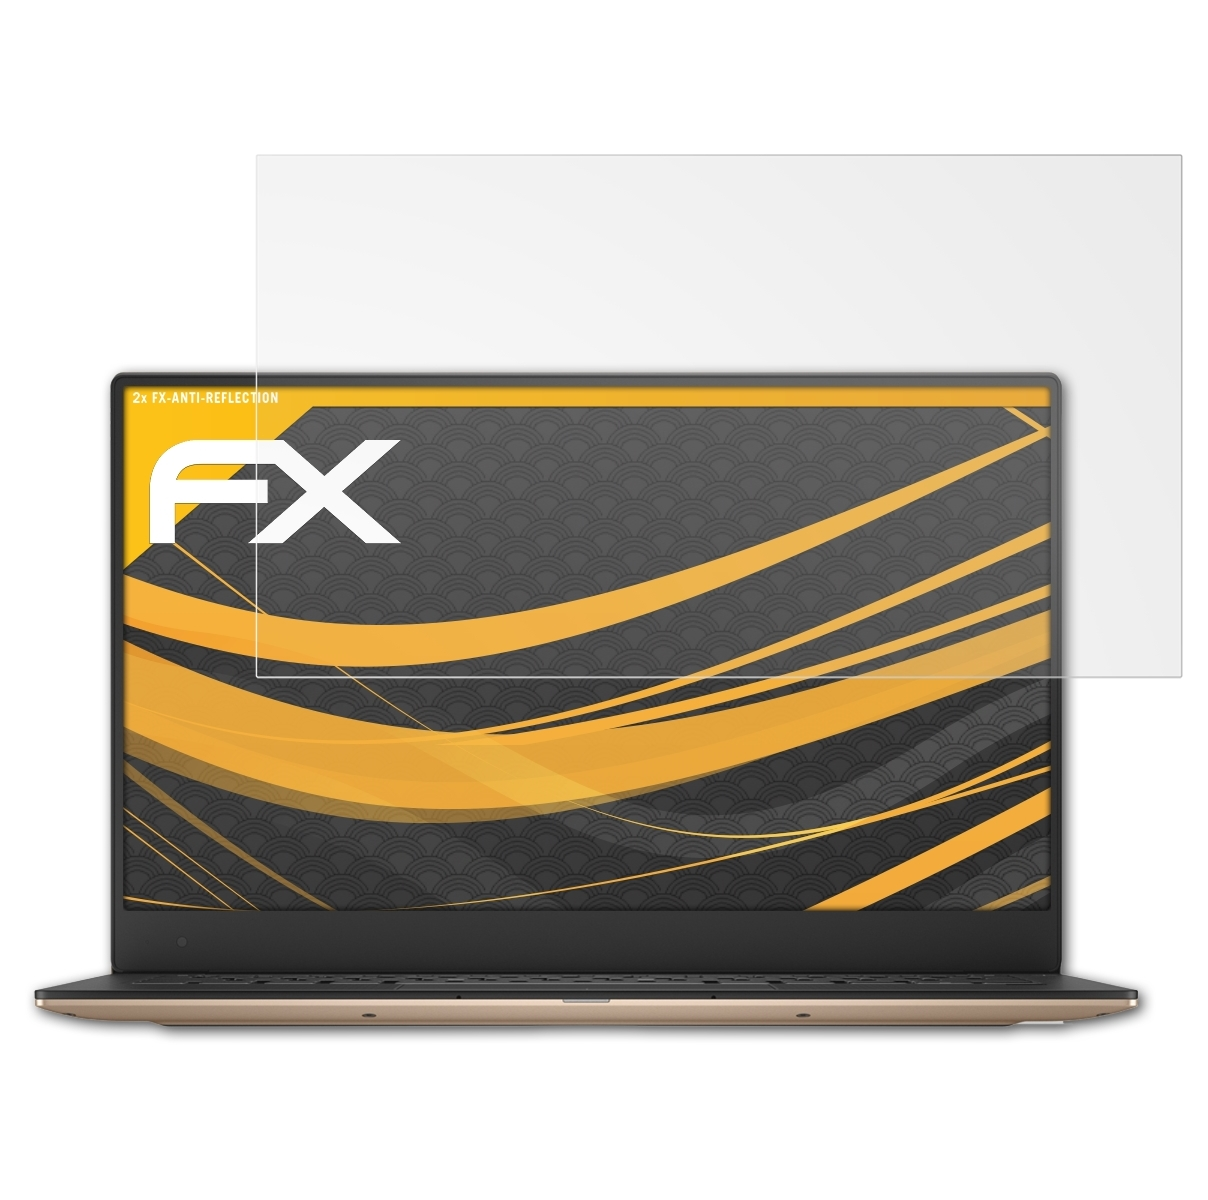 13 2x XPS FX-Antireflex ATFOLIX Dell (9360)) Displayschutz(für